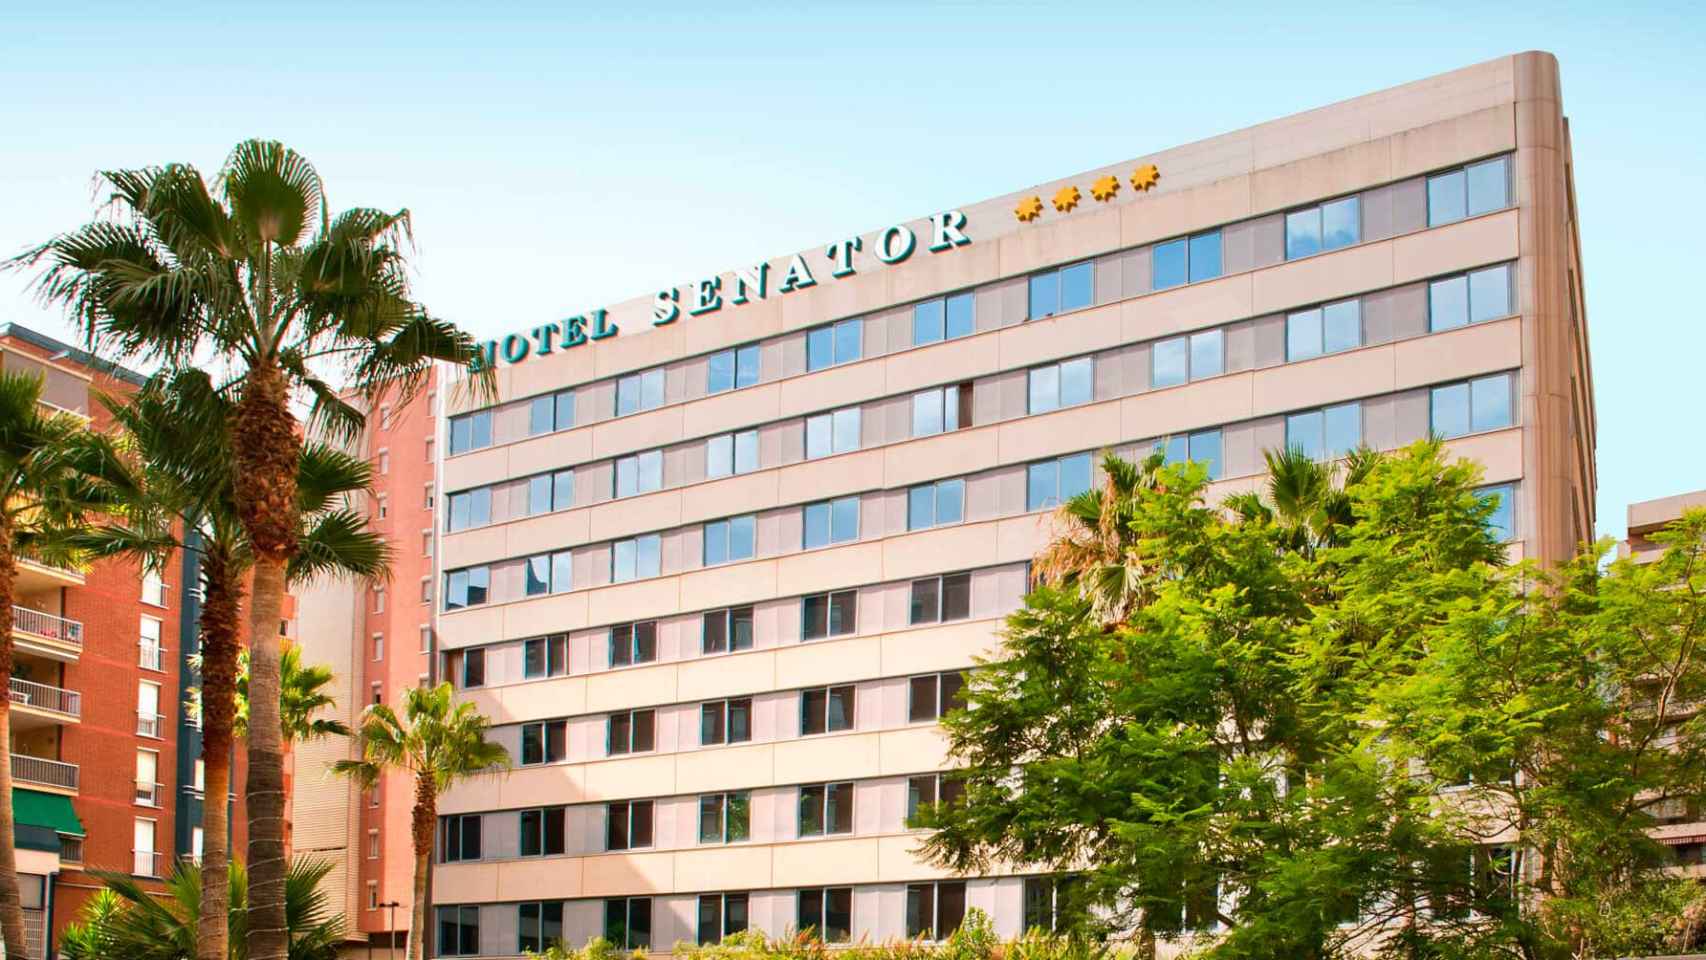 Hotel Senator de Barcelona, nueva adquisición de Atom / SENATOR